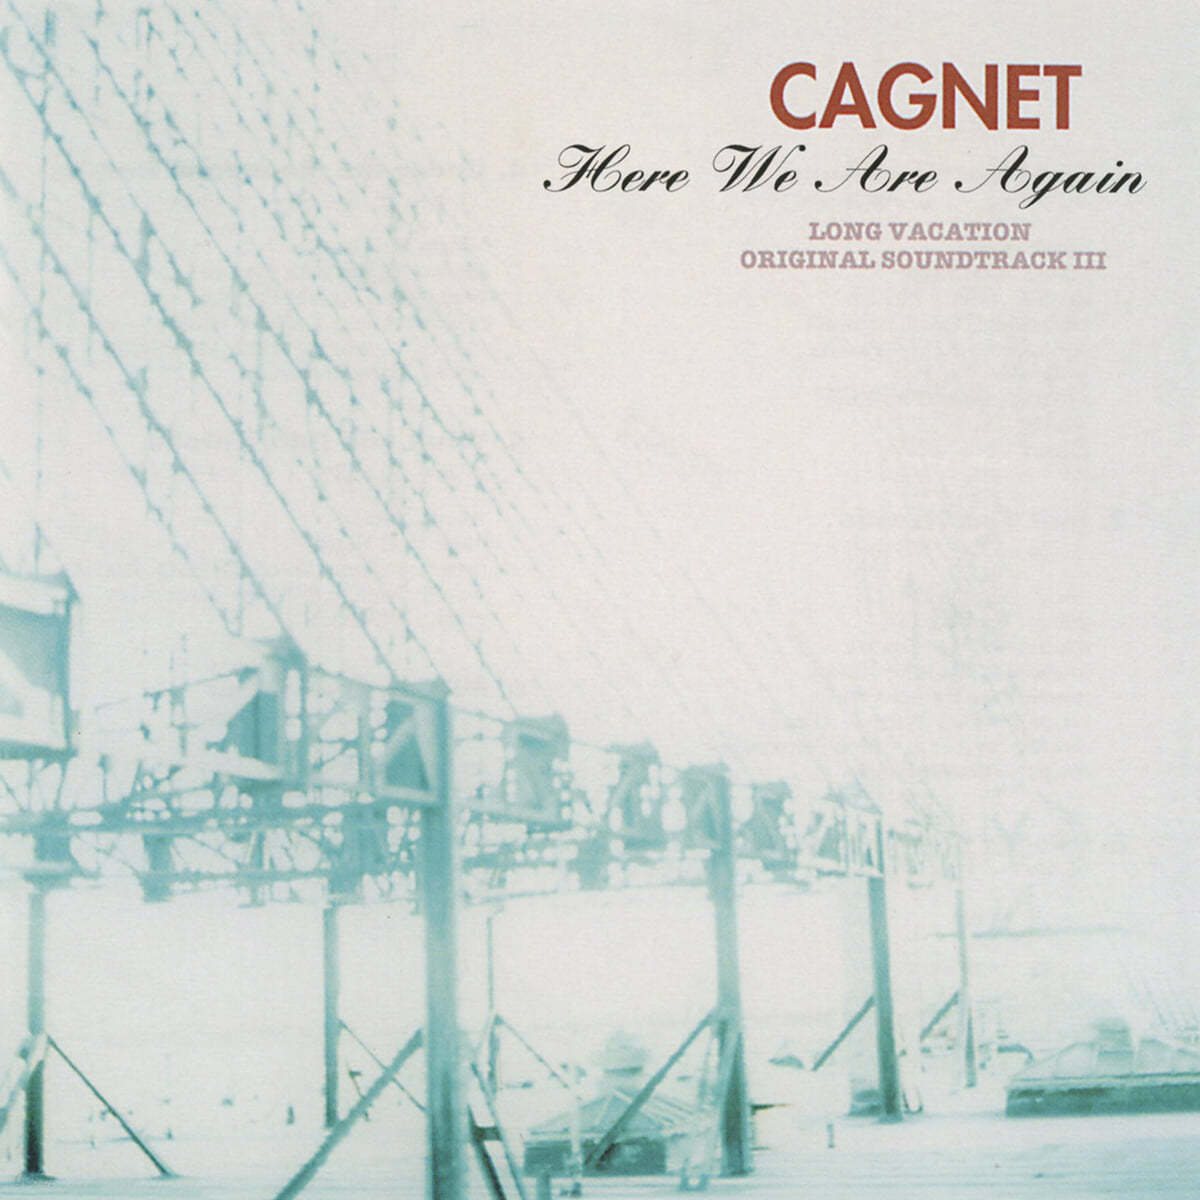 히어 위 아 어게인 ~ 롱 베케이션 드라마음악 (Here We Are Again ~ Long Vacation OST by Cagnet) [LP]